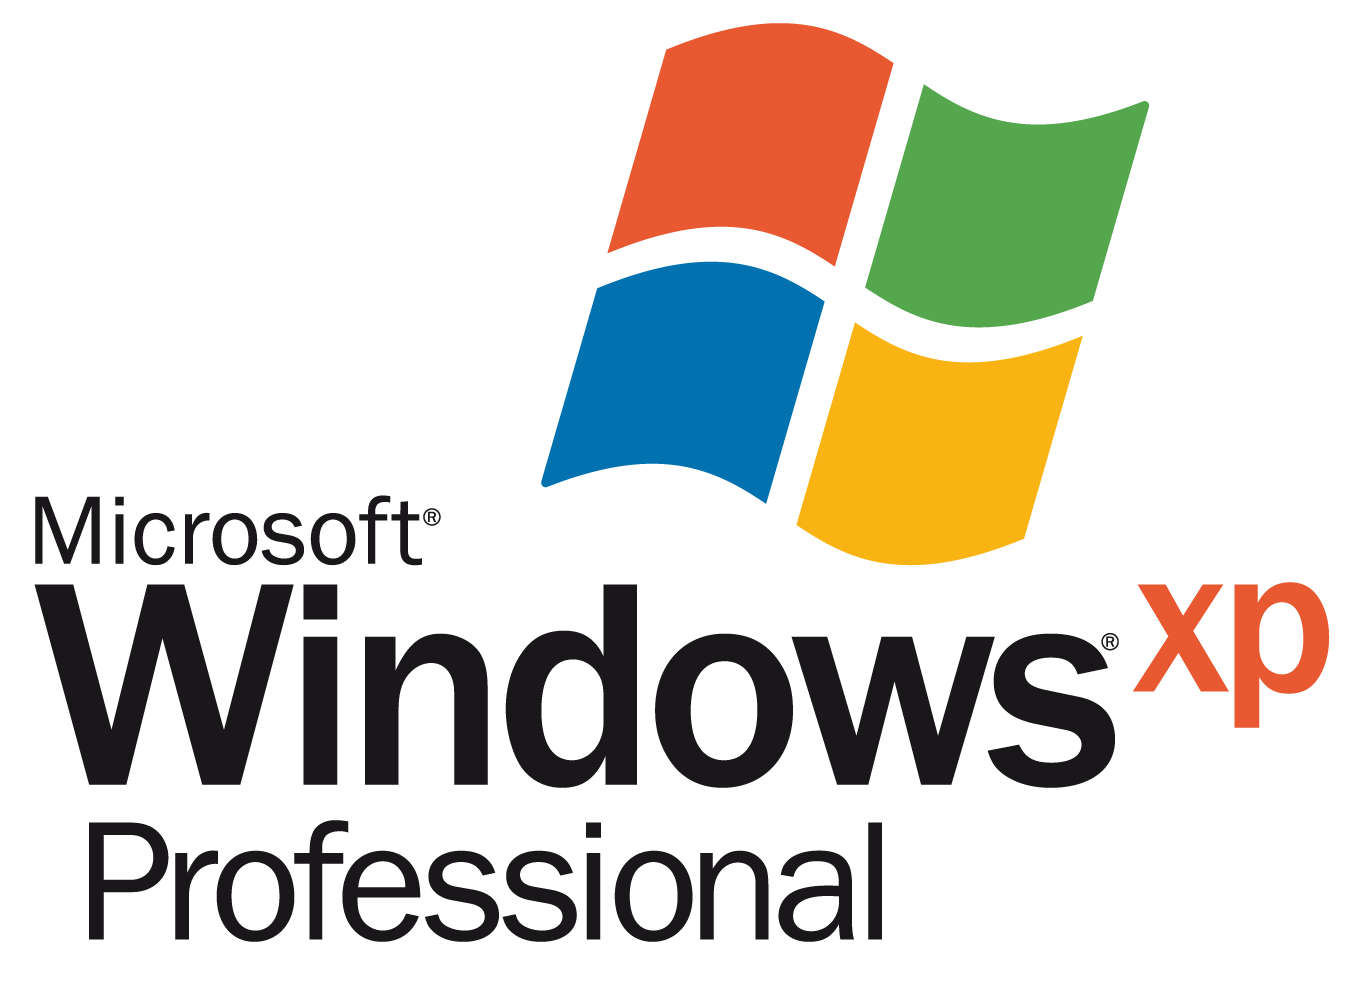 Windows Xp File PNG Image